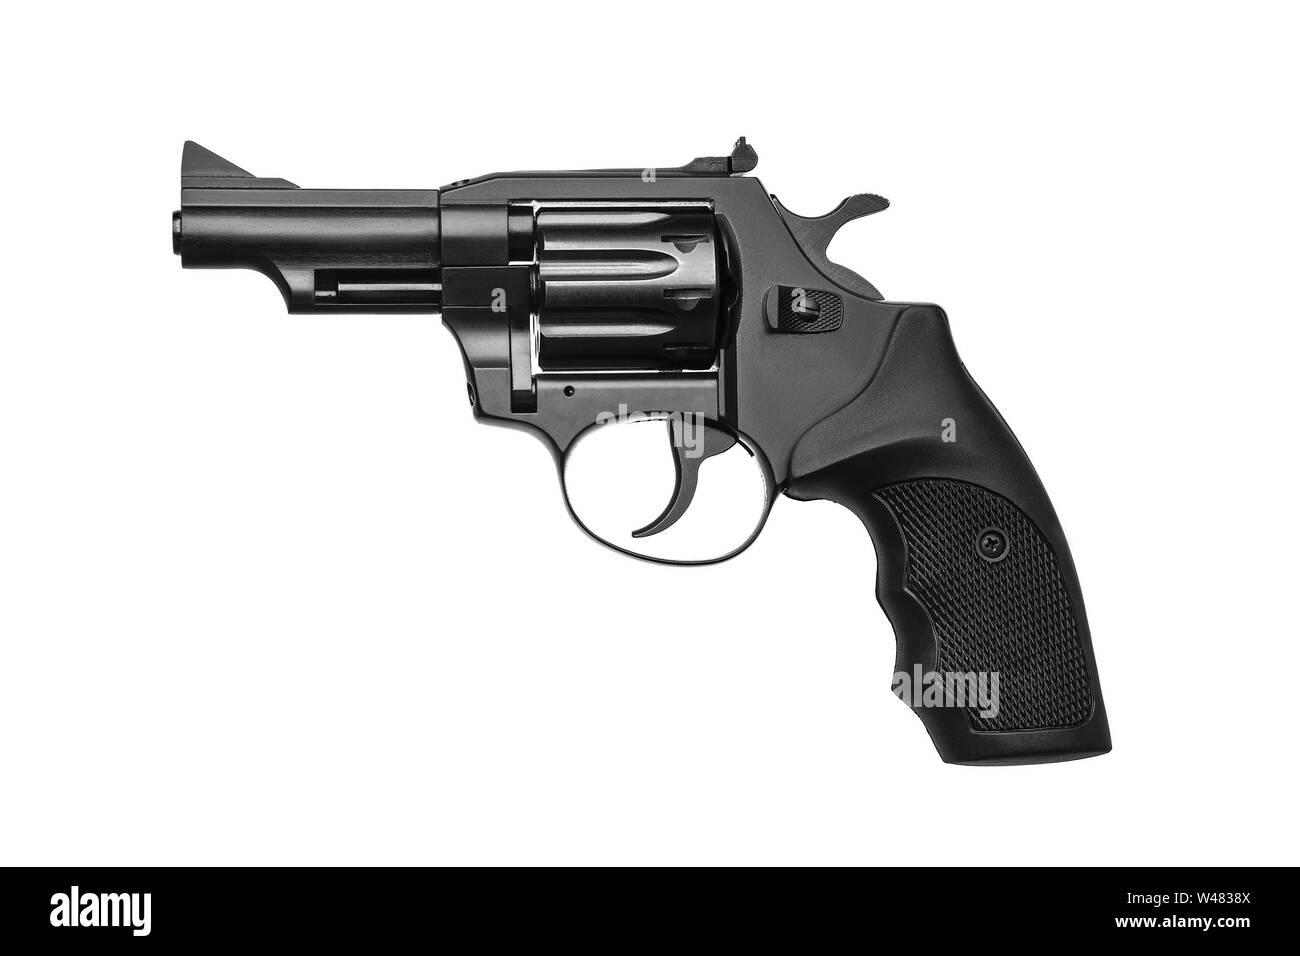 Pistole Revolver isolieren auf weißem Hintergrund. Revolver Pistole schwarz auf weiß wieder isoliert. Stockfoto